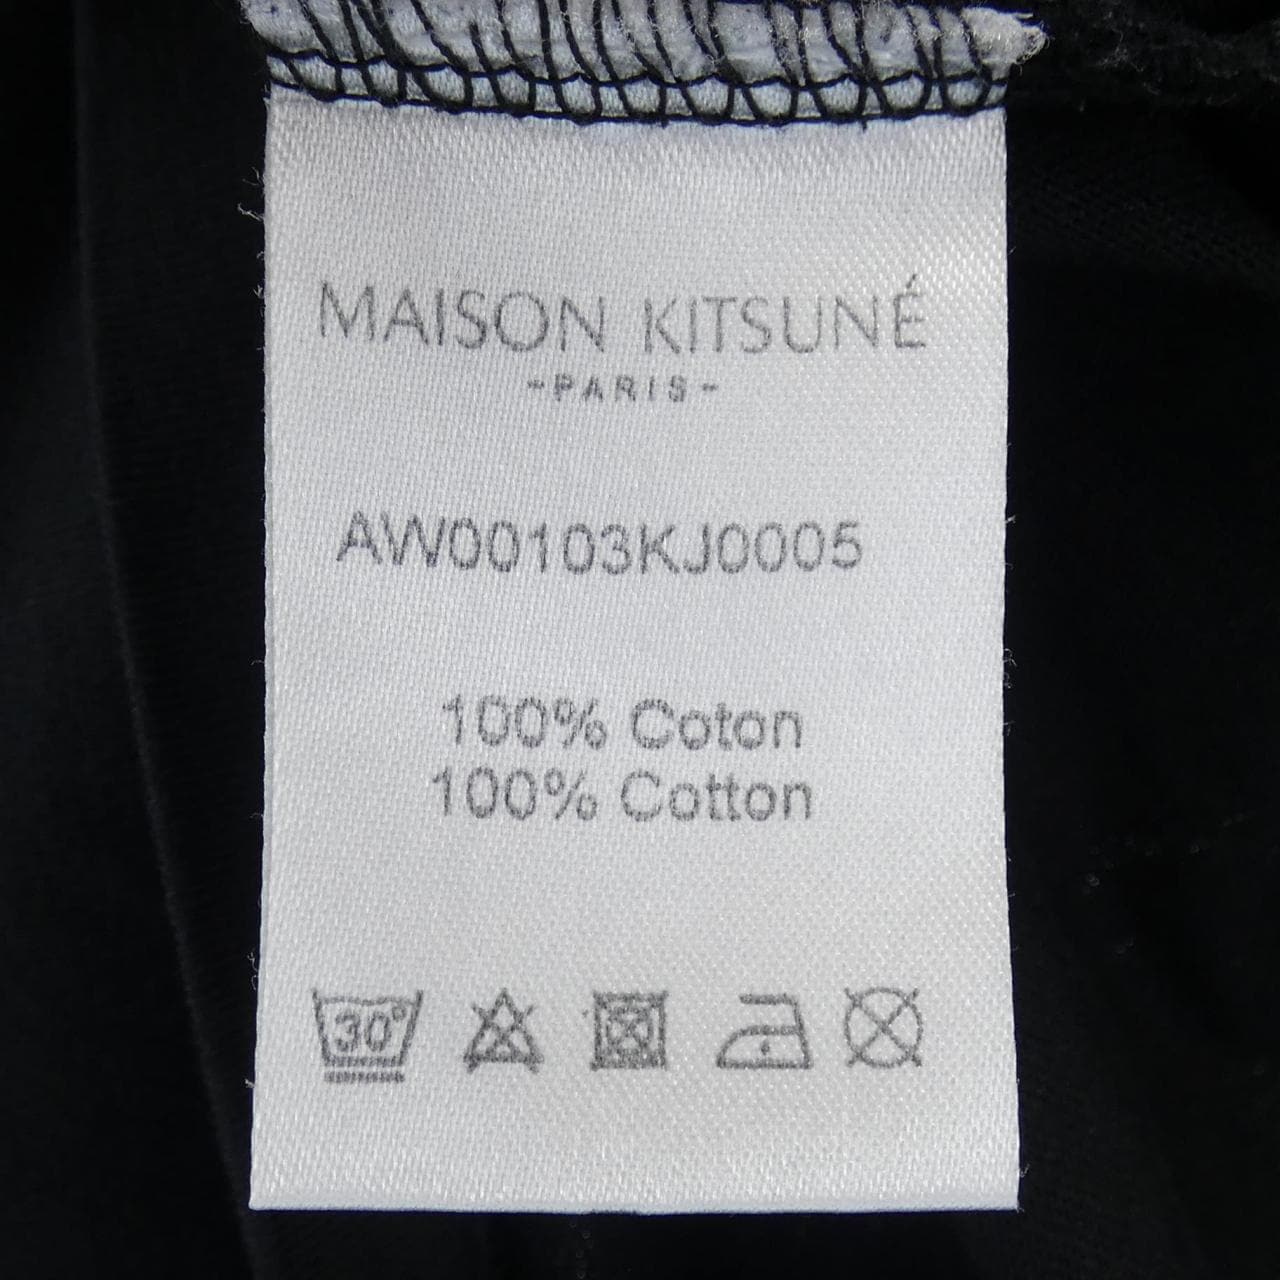 メゾンキツネ MAISON KITSUNE Tシャツ